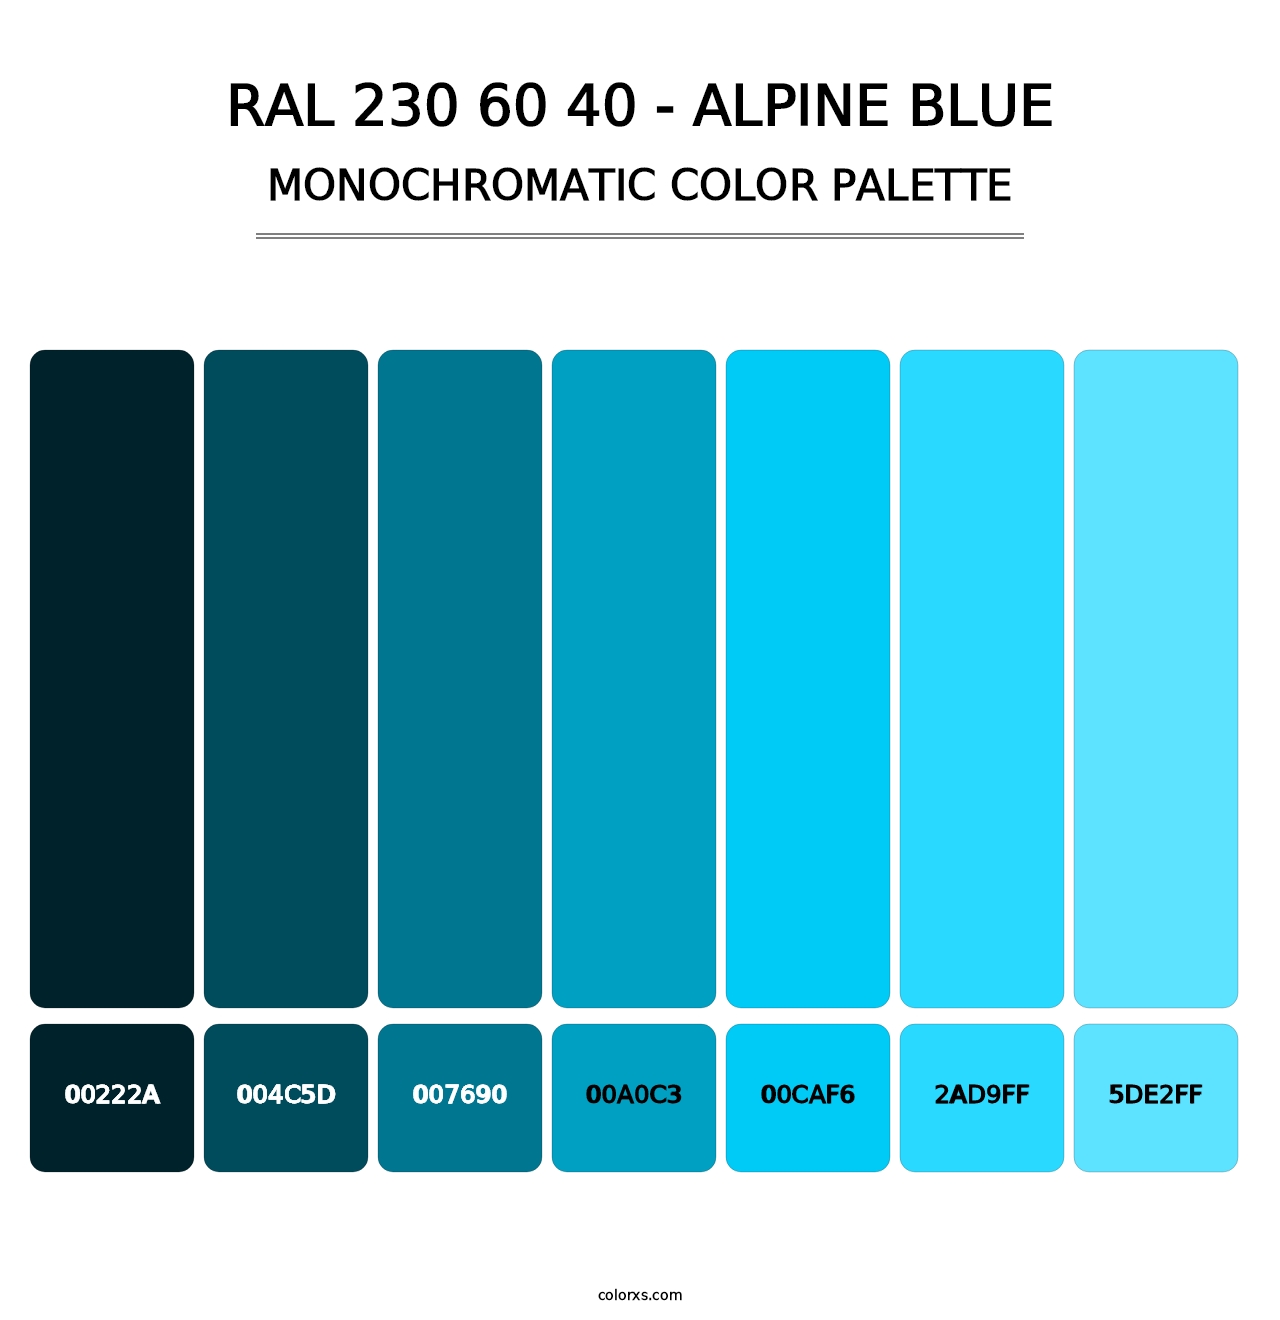 RAL 230 60 40 - Alpine Blue - Monochromatic Color Palette